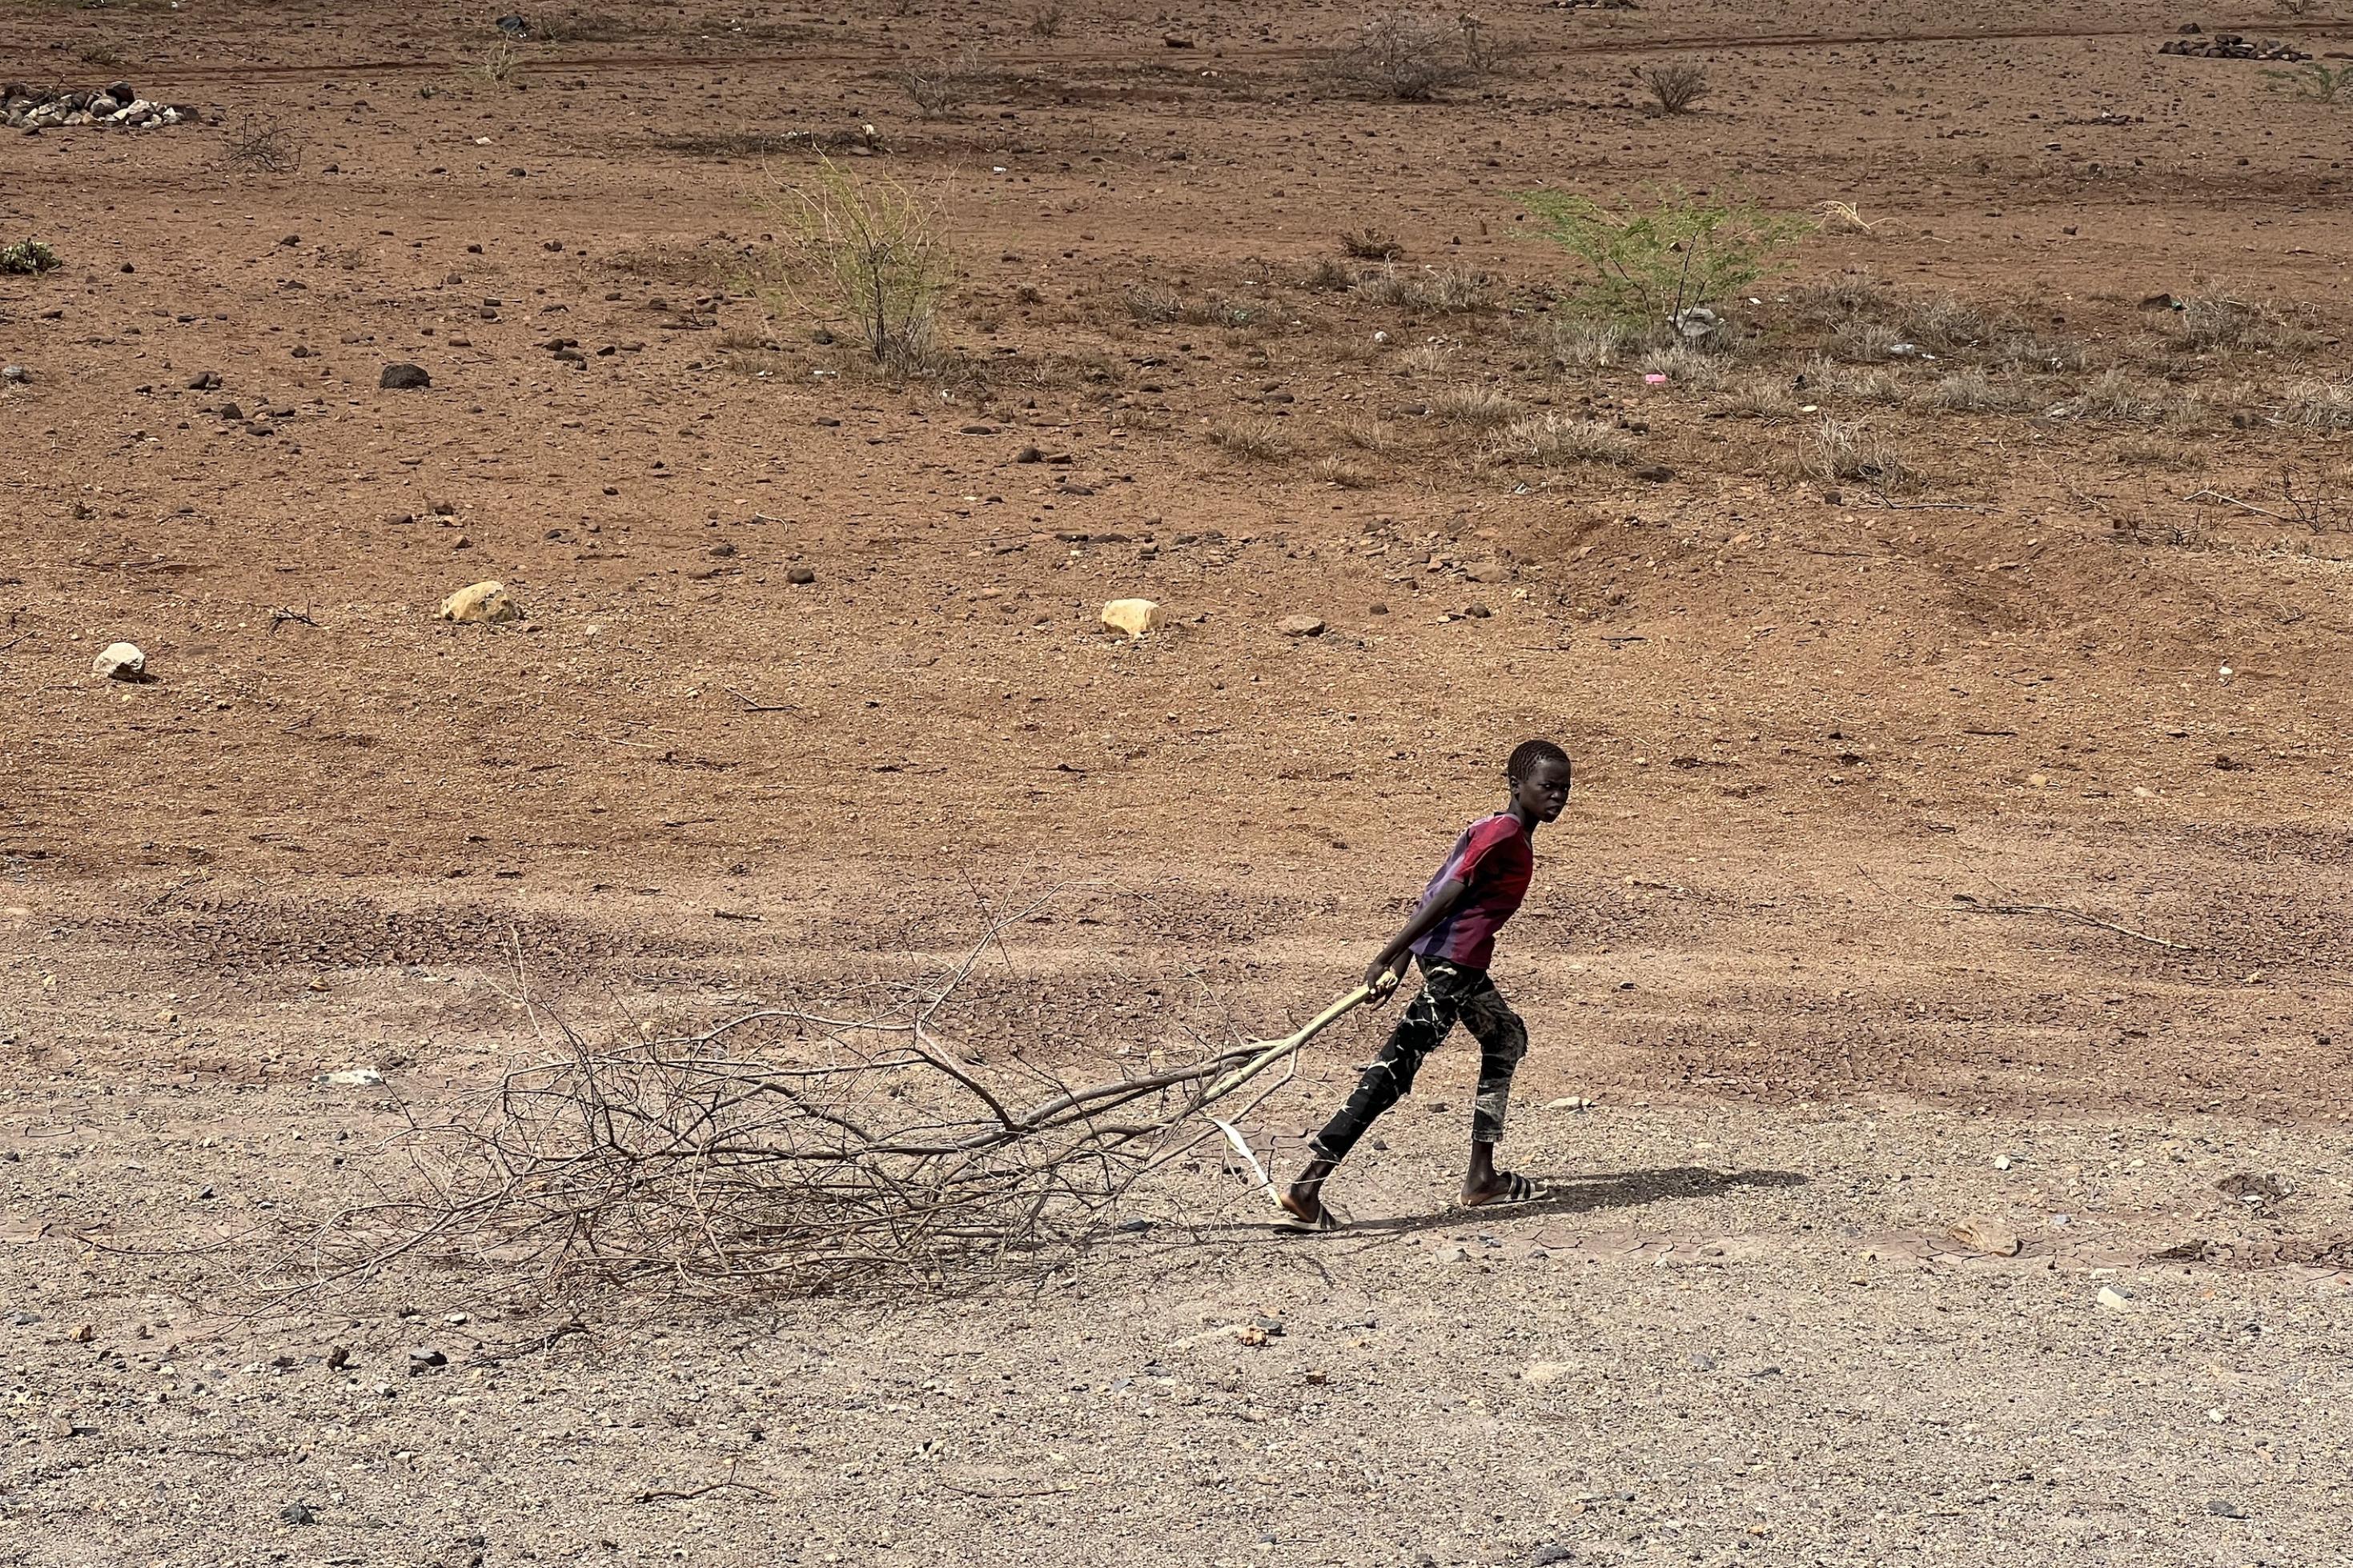 Zu sehen ist eine völlig ausgetrockente Landschaft. Ein Junge zieht einen großen Ast hinter sich her, Brennholz, das er zum nahen Flüchtlingslager bringt.